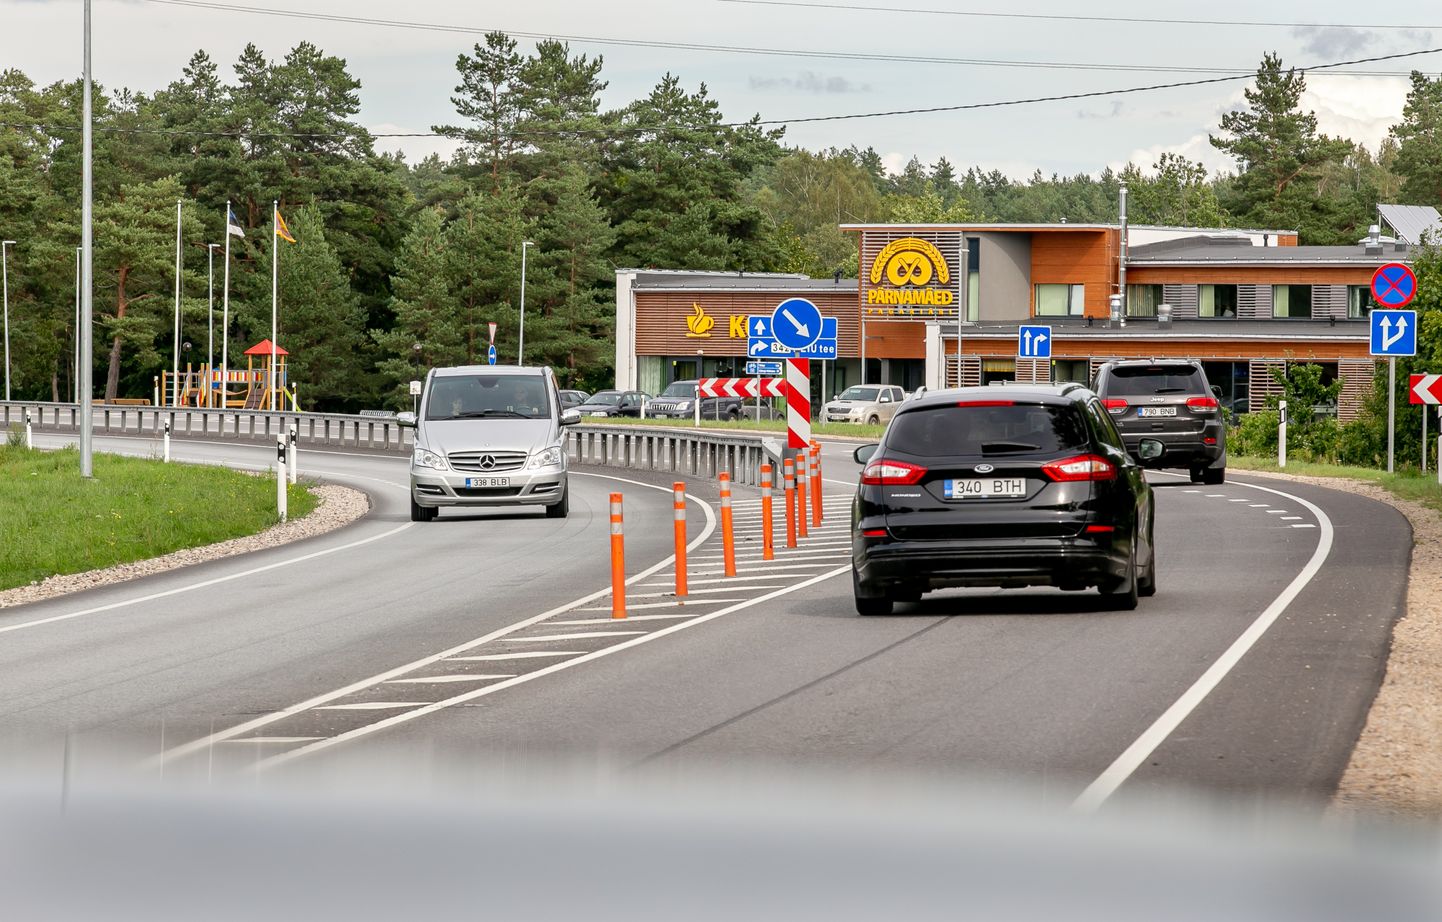 Et Via Baltica ääres oma kohviku avada saaks, pidi ettevõte investeerima peaaegu pool miljonit eurot maanteel ohutuma liikluskorralduse väljaehitamisse.